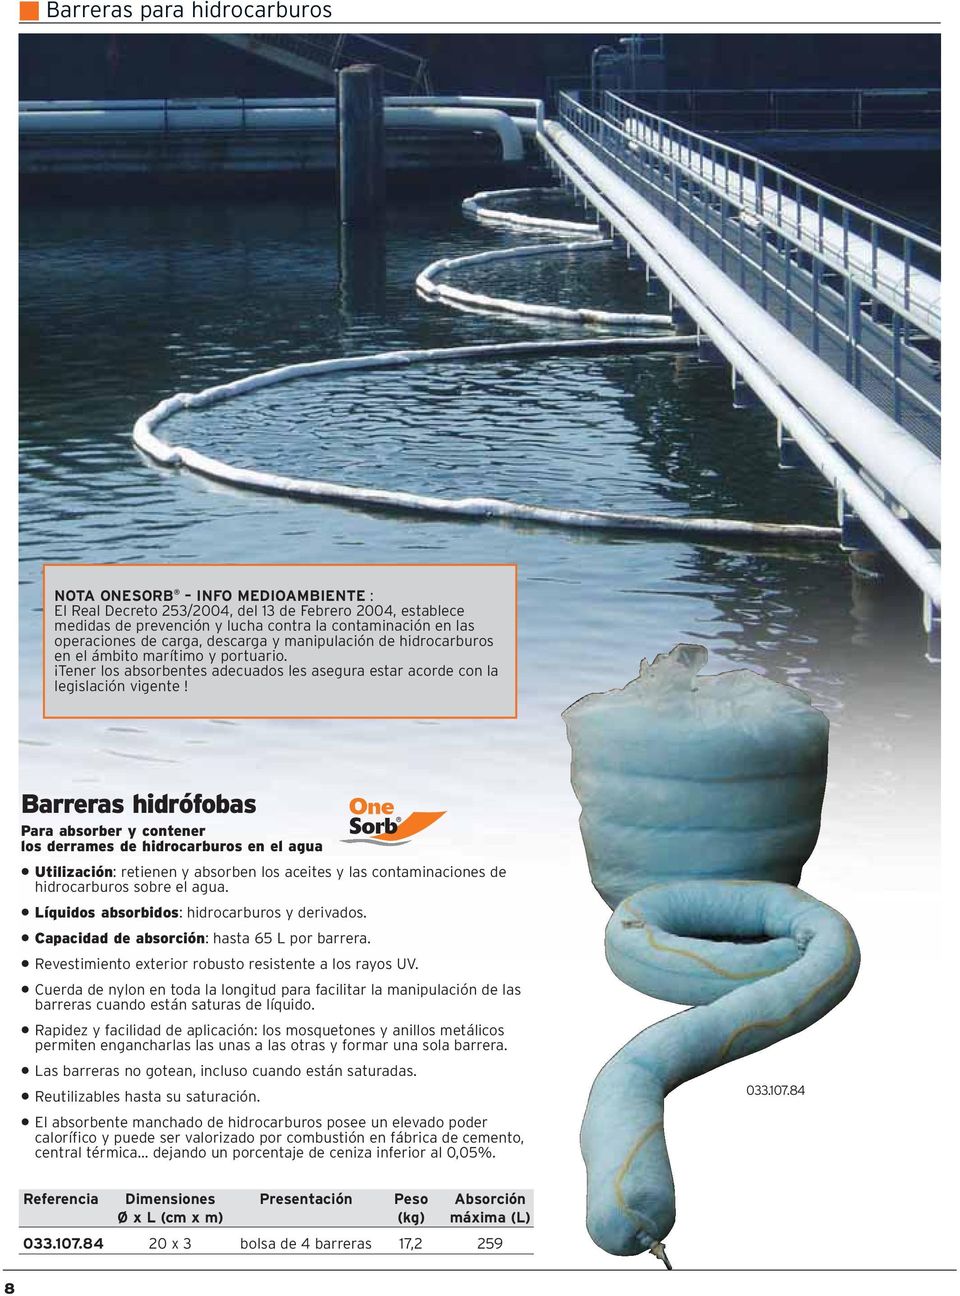 Barreras hidrófobas Para absorber y contener los derrames de hidrocarburos en el agua Utilización: retienen y absorben los aceites y las contaminaciones de hidrocarburos sobre el agua.